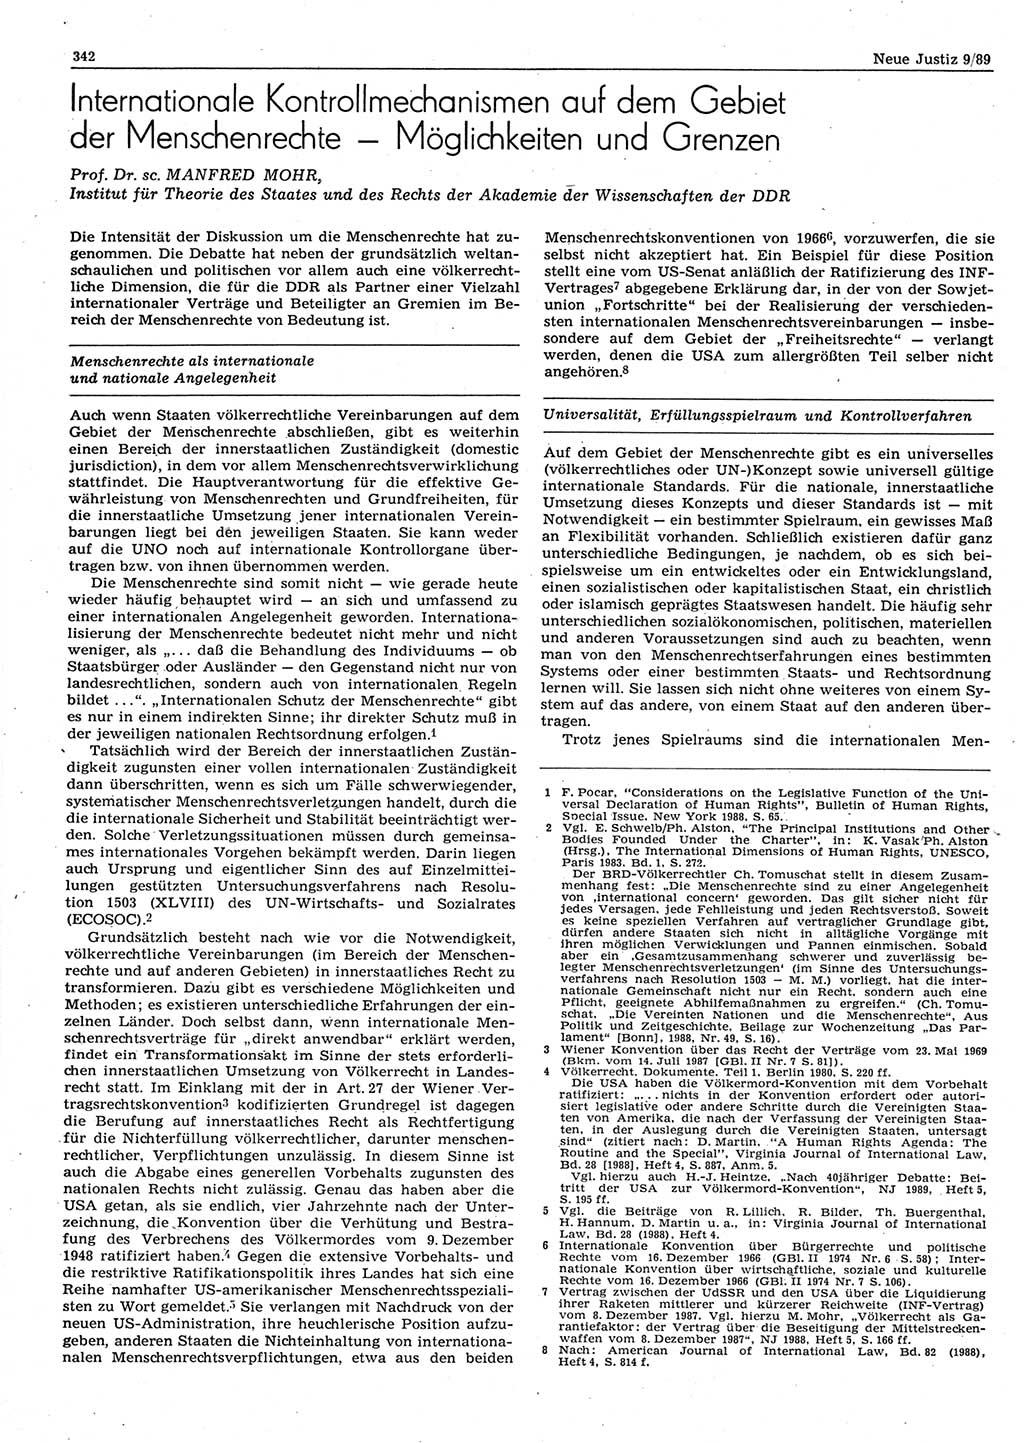 Neue Justiz (NJ), Zeitschrift für sozialistisches Recht und Gesetzlichkeit [Deutsche Demokratische Republik (DDR)], 43. Jahrgang 1989, Seite 342 (NJ DDR 1989, S. 342)